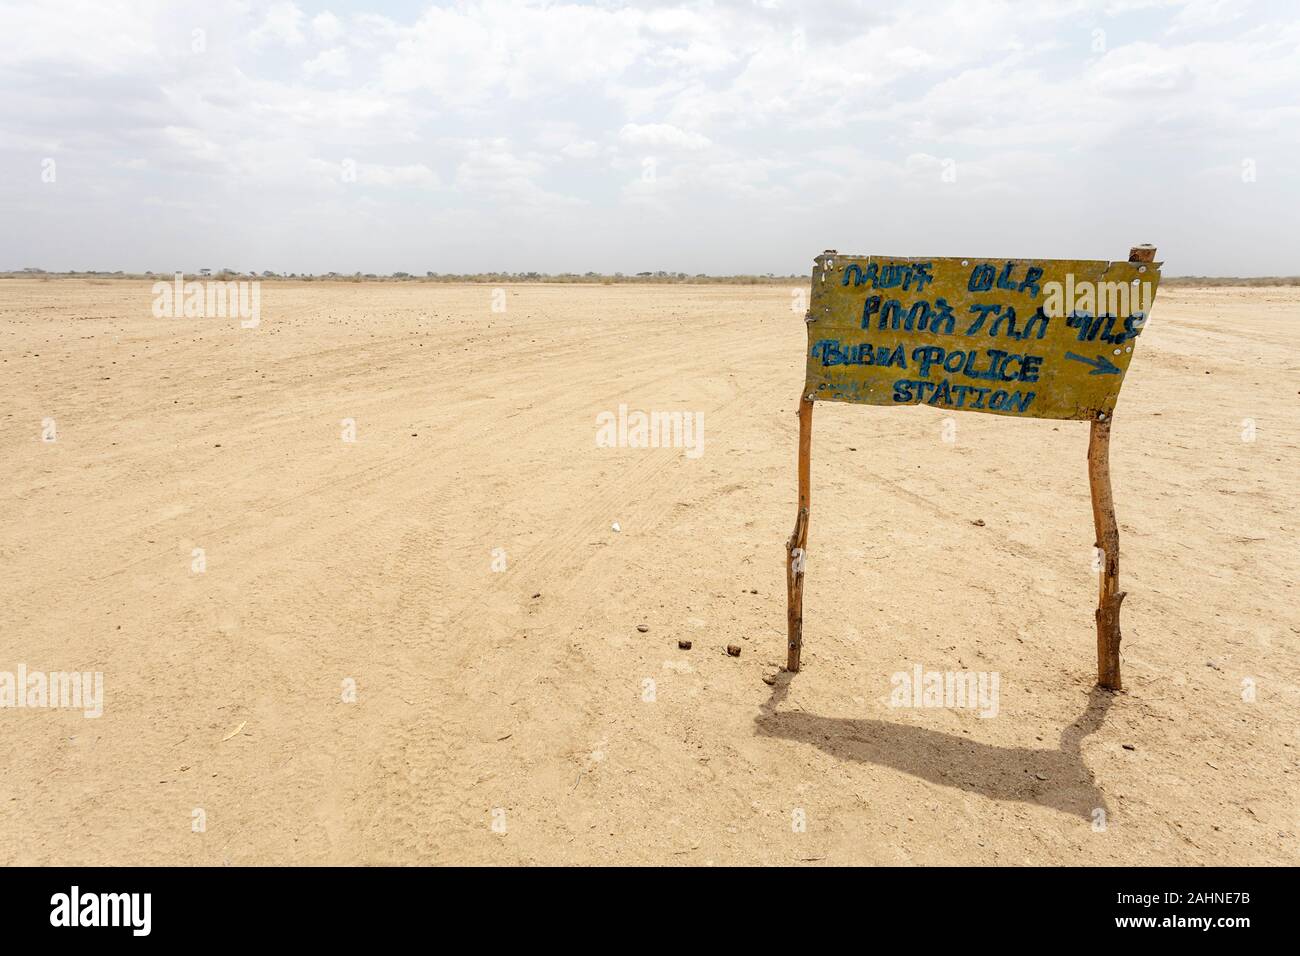 Schild der Polizeistation in der Wüstenlandschaft nahe dem turkana-see, der Grenze Äthiopiens und Kenias Stockfoto